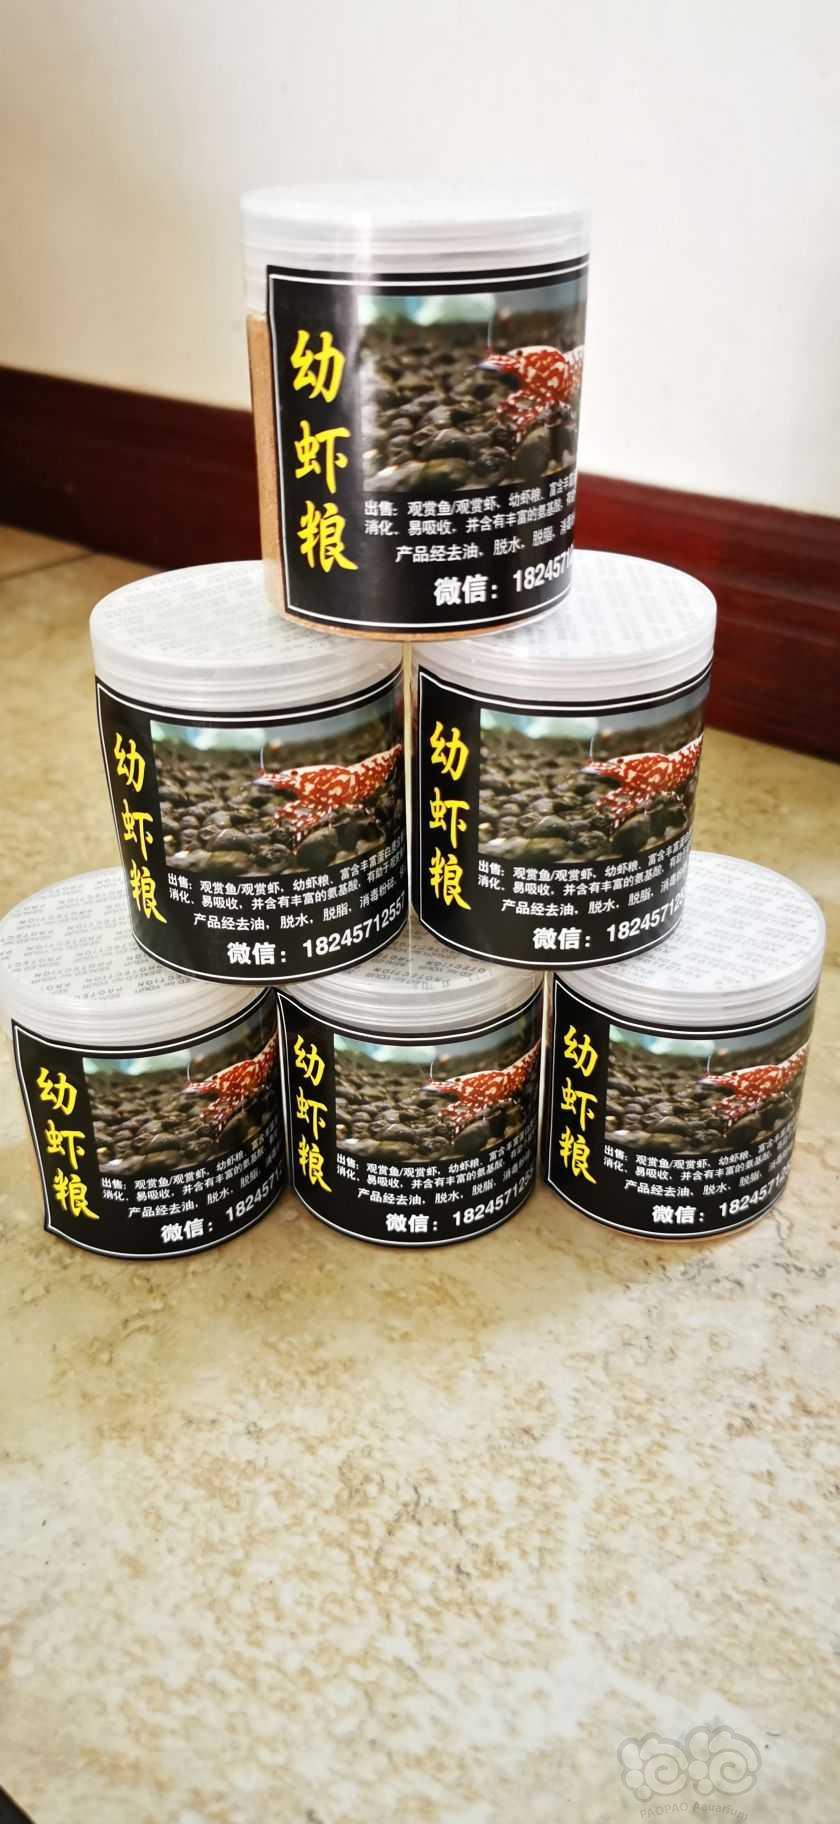 【用品】2021-6-26#RMB拍卖幼虾粮2罐-图4